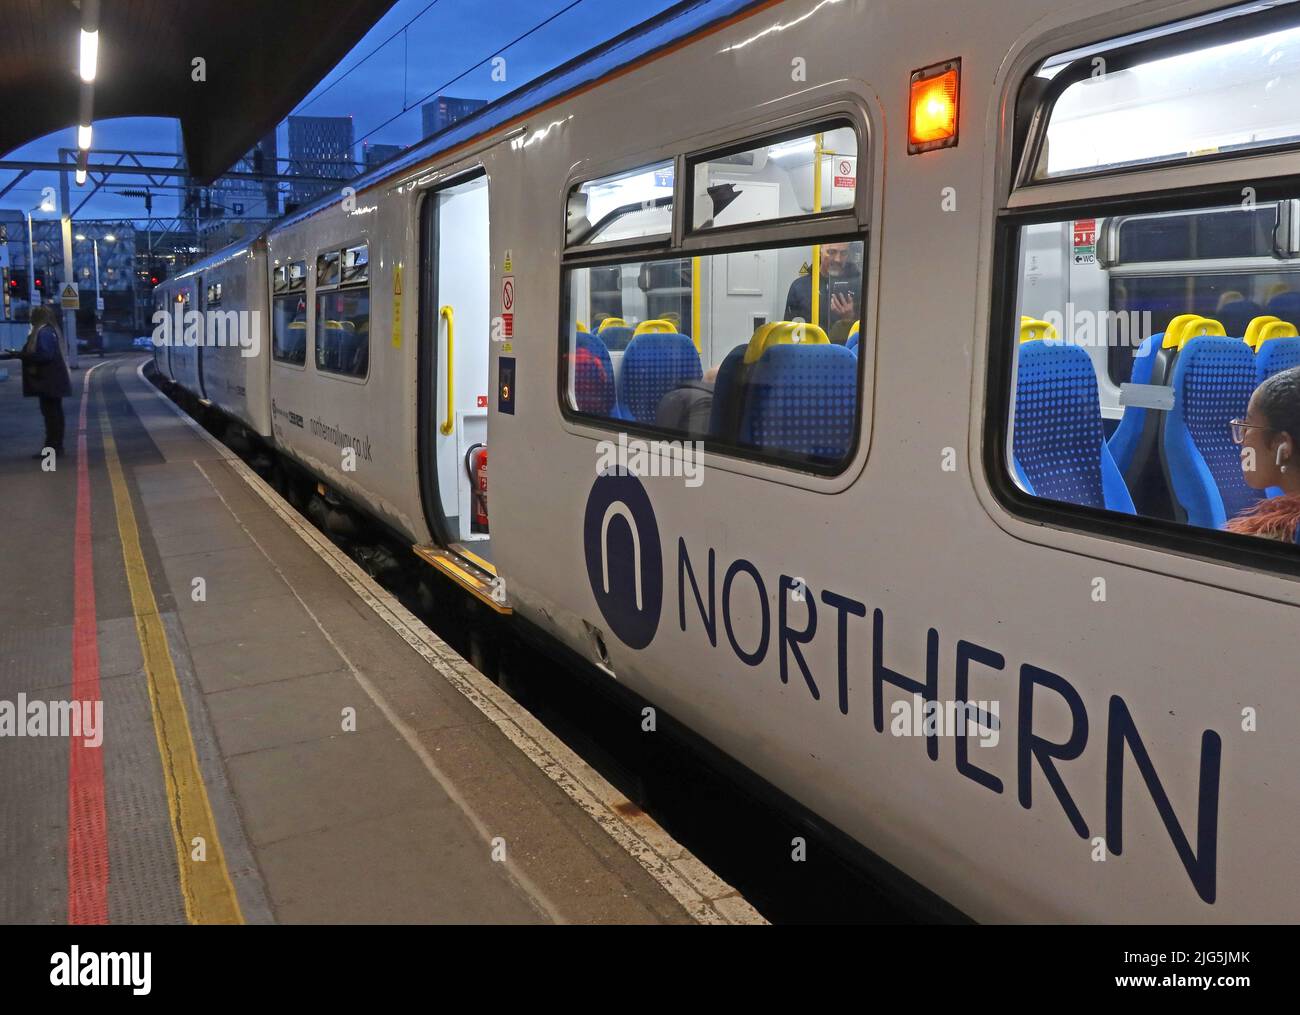 Treno Northern Railway EMU, alla stazione ferroviaria di Oxford Road, Manchester, Station Approach, Oxford Rd, Manchester, INGHILTERRA, REGNO UNITO, M1 6FU Foto Stock